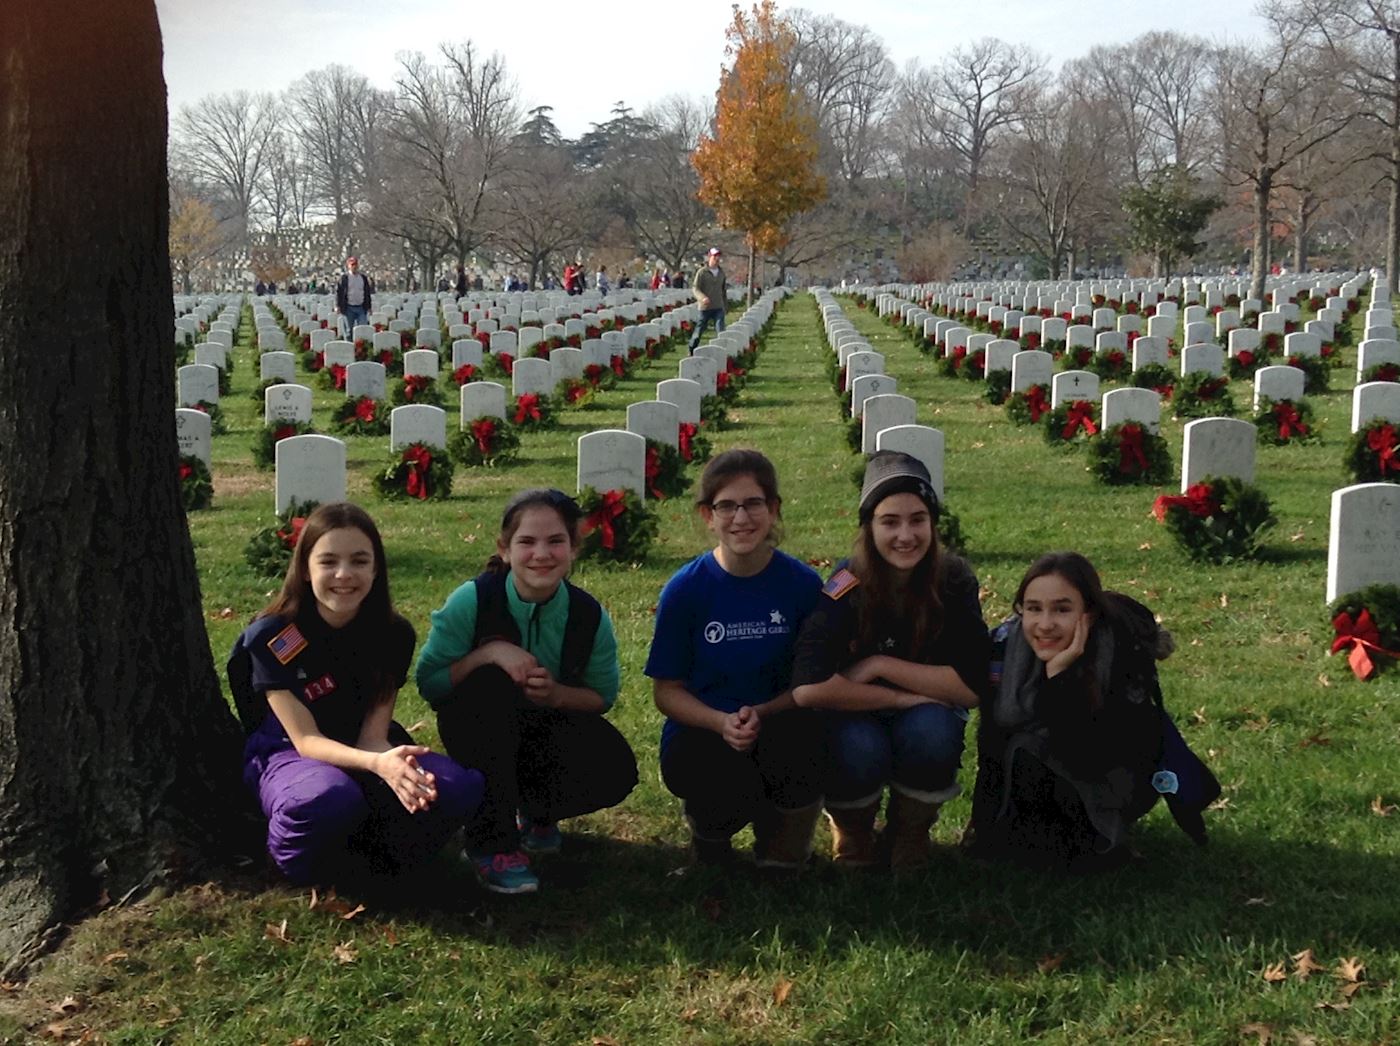 Members of American Heritage Girls Troop MD0134 at Arlington National Cemetery in 2015.